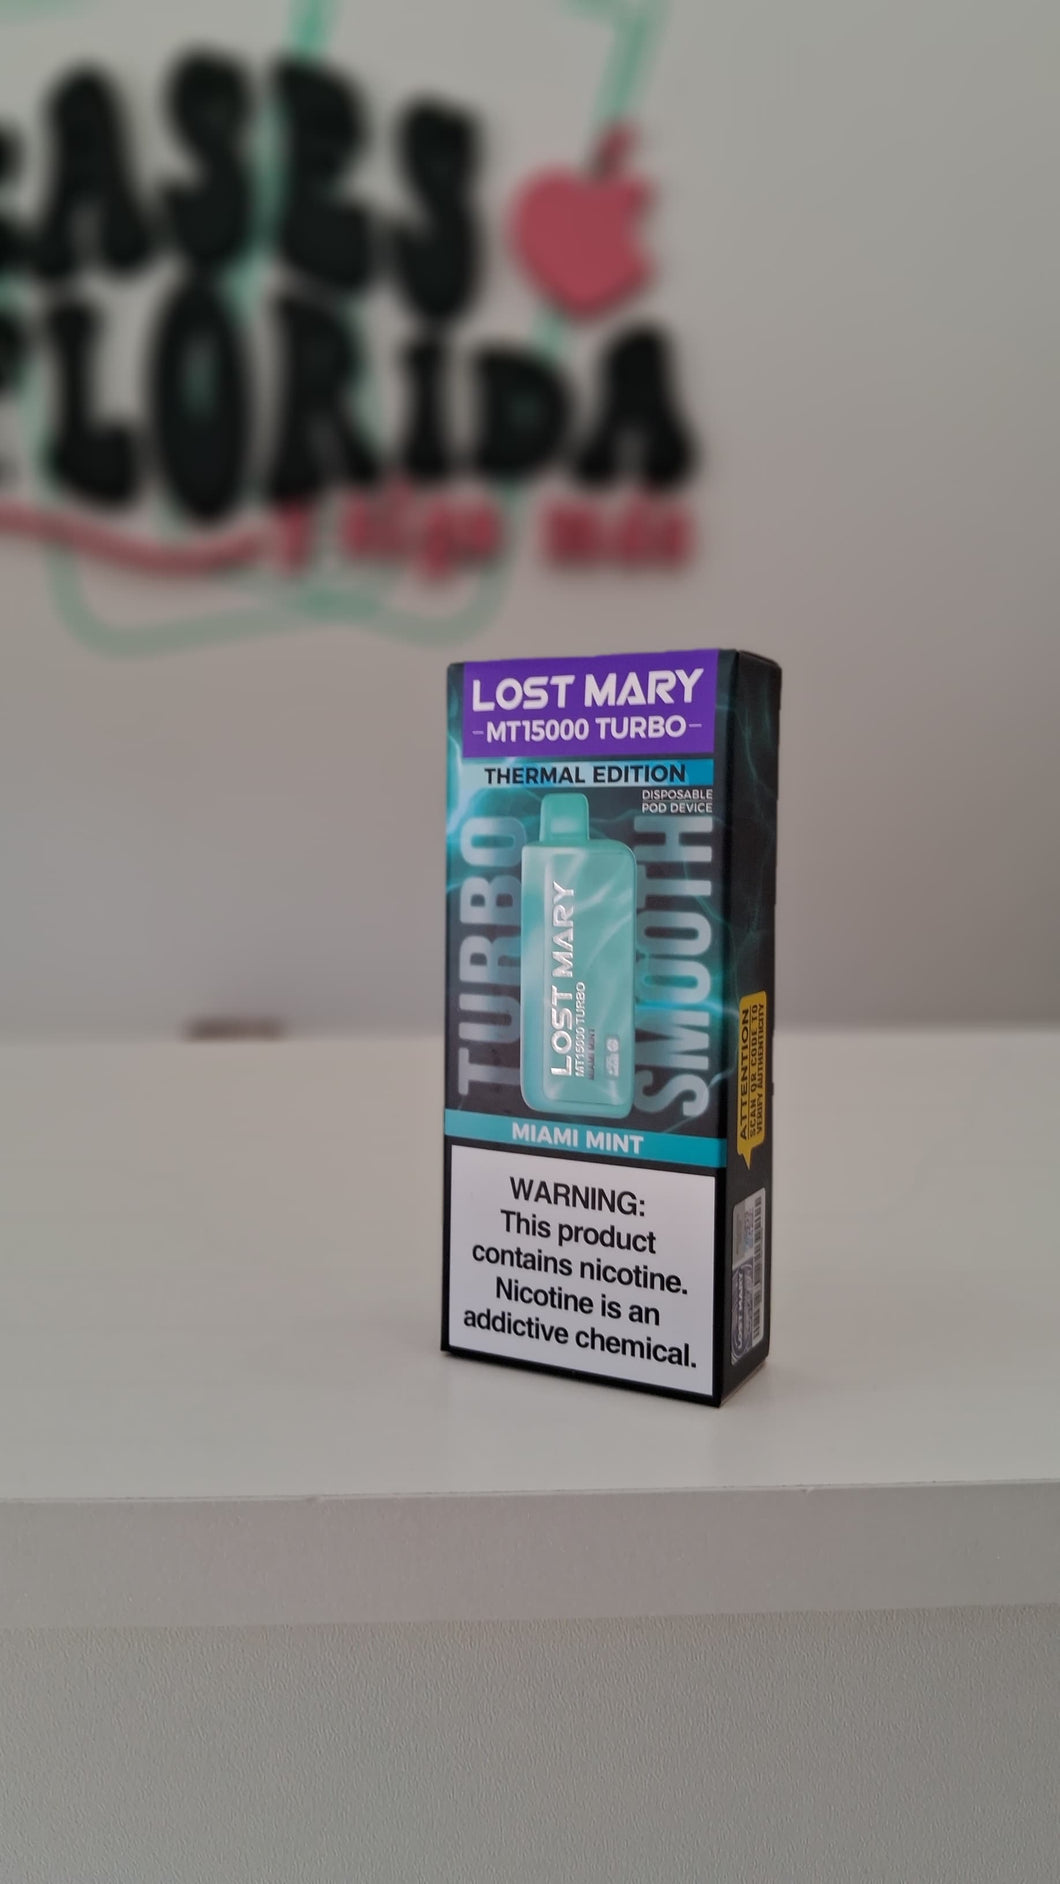 Lost Mary Turbo 15.000 Puffs. Miami Mint